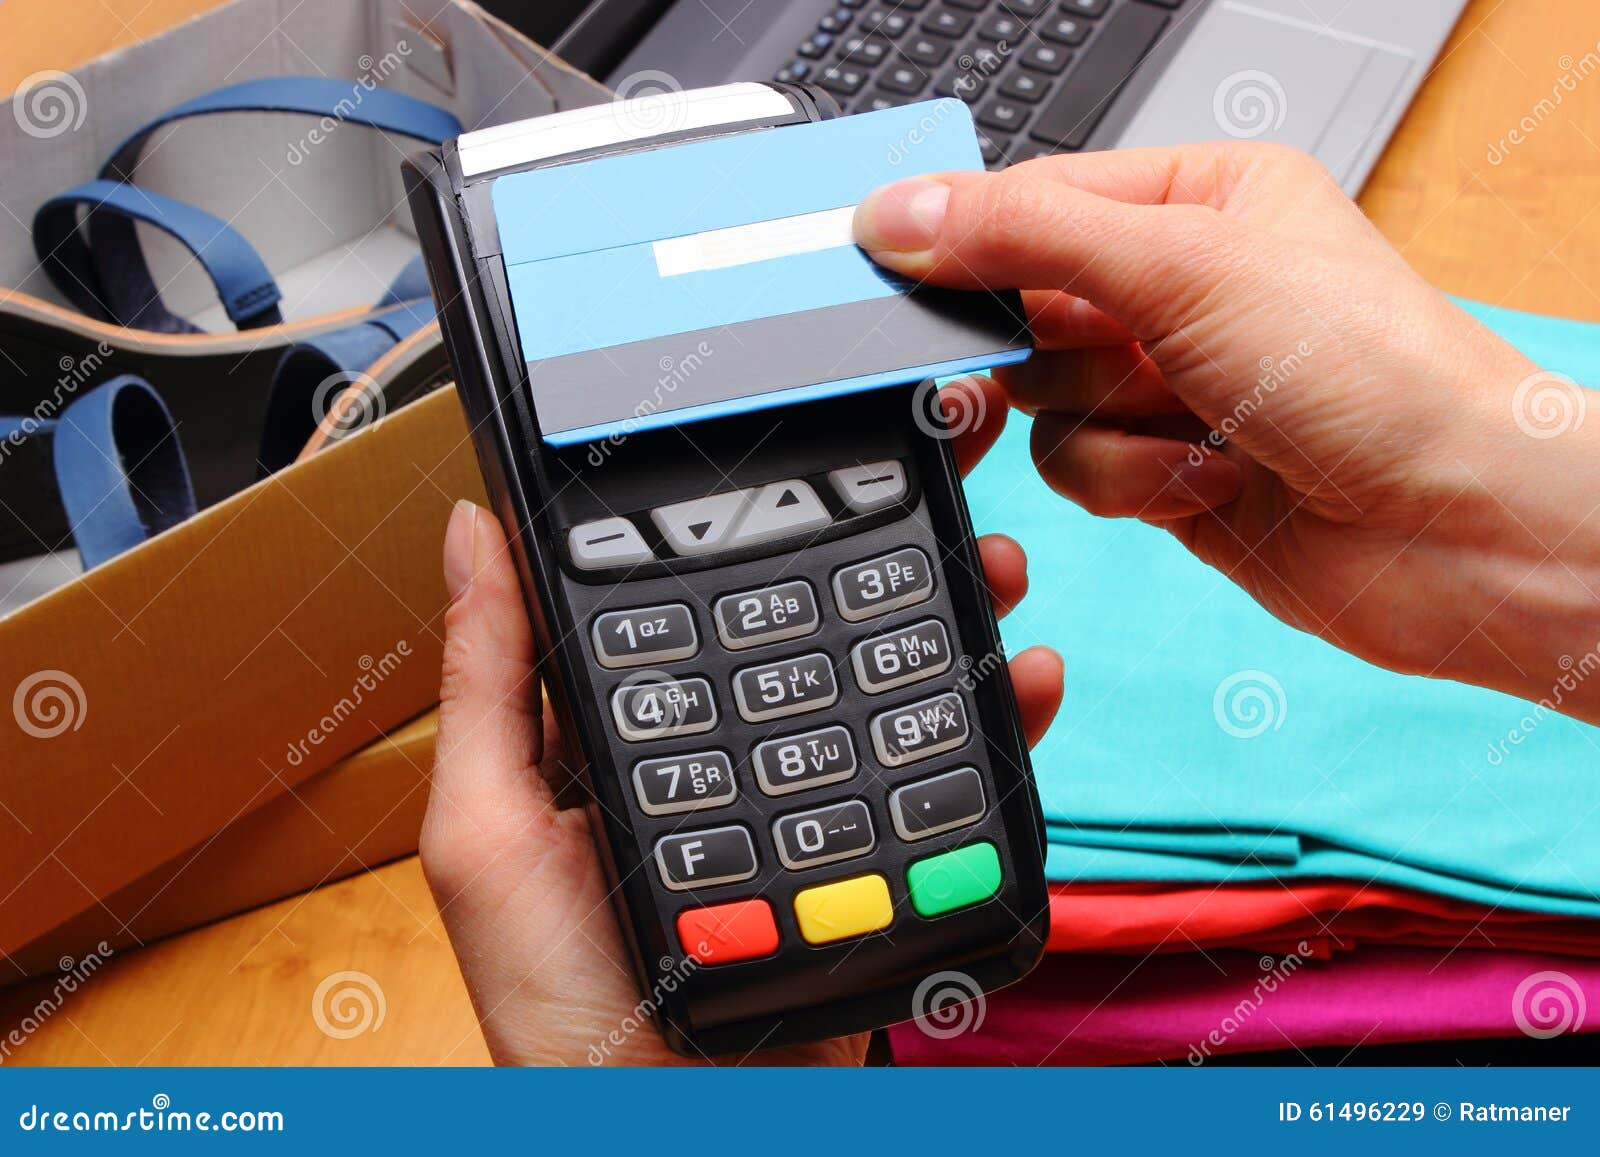 Utilice El Terminal Del Pago Y La Tarjeta De Crédito Con La Tecnología De  NFC Para Pagar Compras En Tienda Imagen de archivo - Imagen de cashless,  manera: 61496229